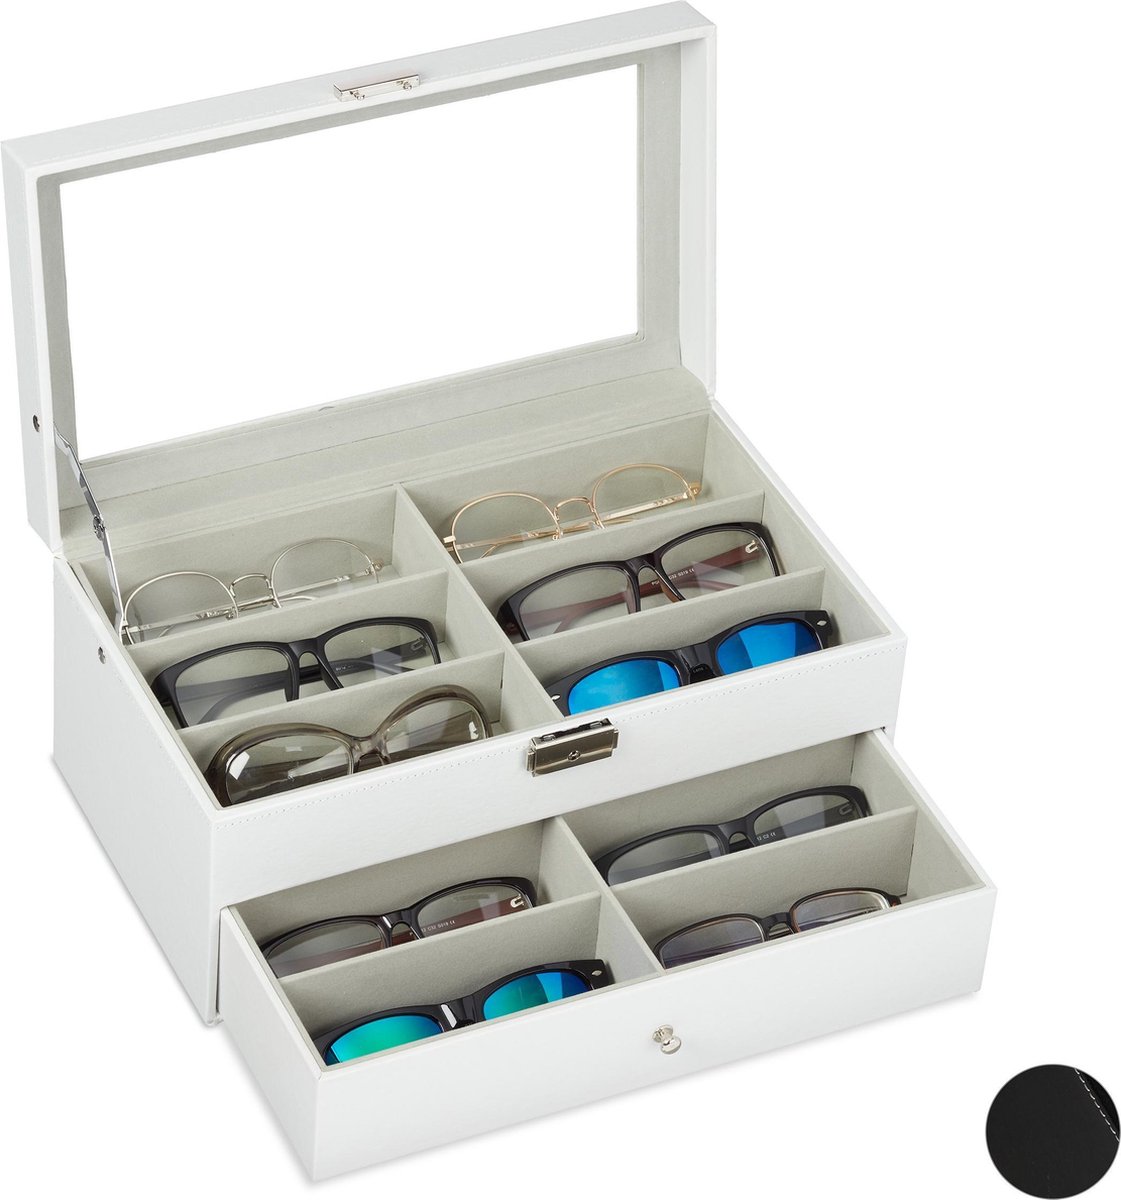 Relaxdays brillendoos voor 12 brillen - brillen opbergdoos - brillen display - met lade - wit